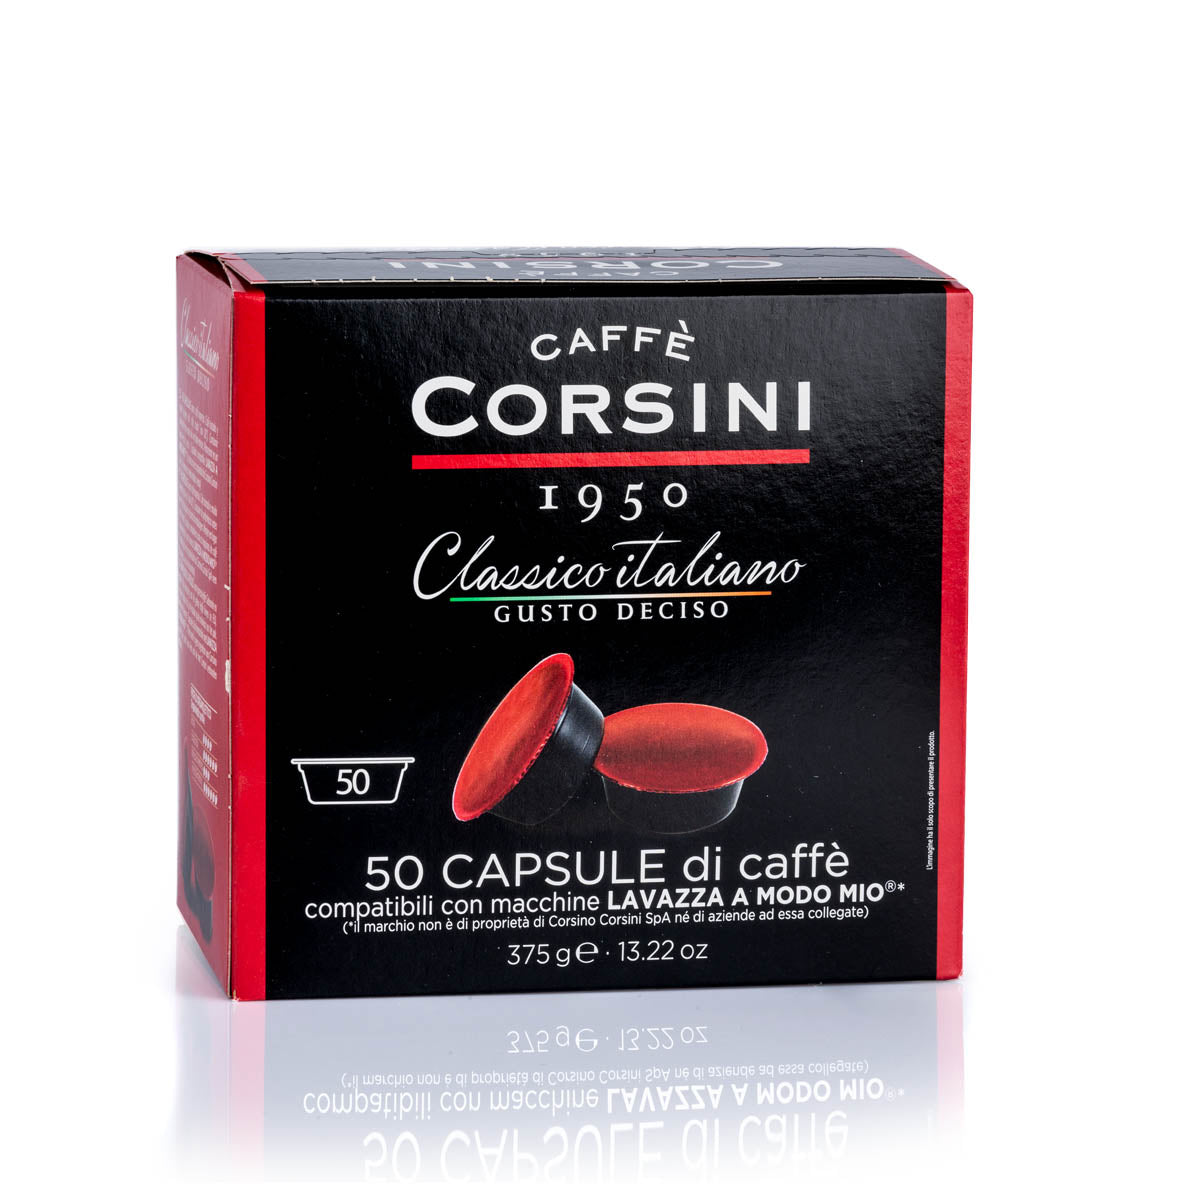 50 Lavazza®* A Modo Mio®* compatible coffee capsules per pack | Classico Italiano | Gusto deciso | Box of 4